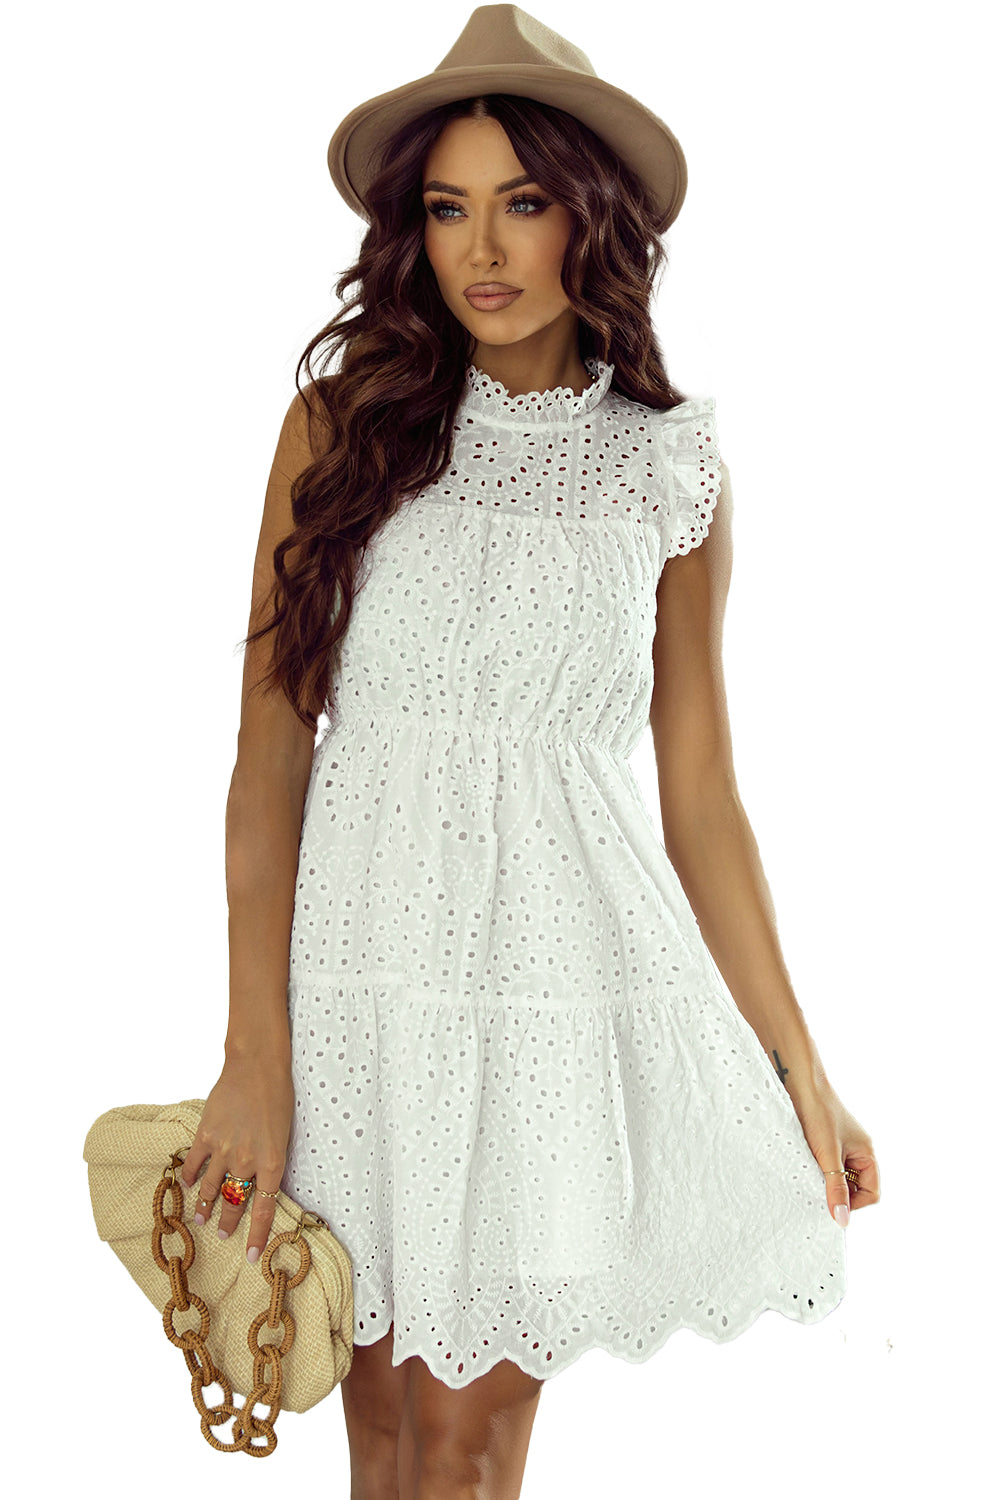 Weißes, elegantes, kurzes Kleid in A-Linie mit ausgehöhltem Flattermuster